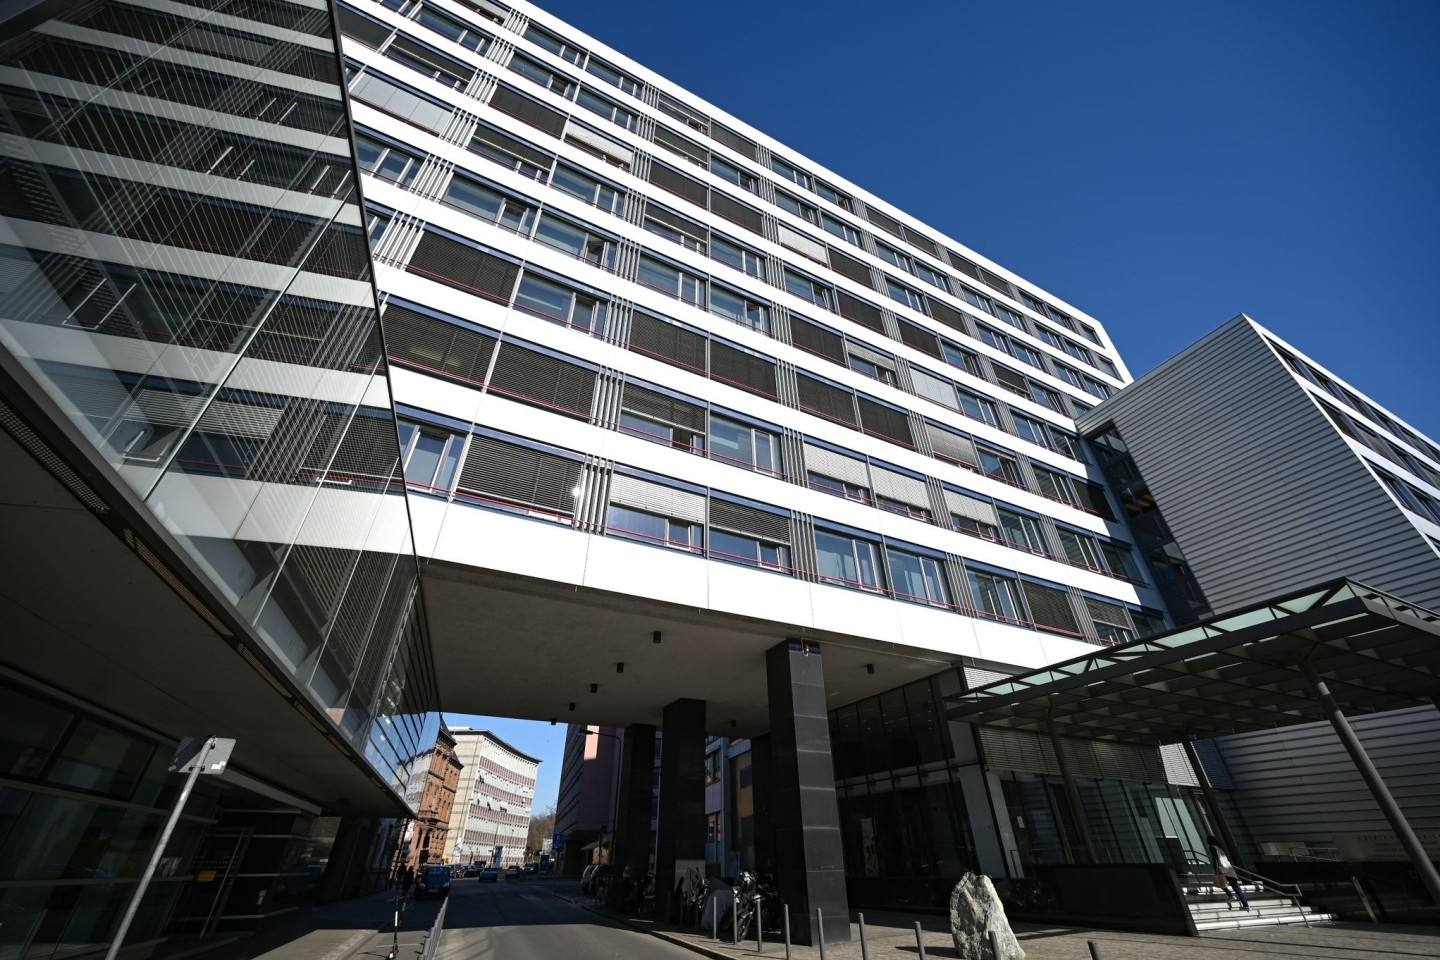 Im Frankfurter Gerichtsviertel liegt der Gebäudetrakt, in dem die Generalstaatsanwaltschaft ihren Sitz hat.